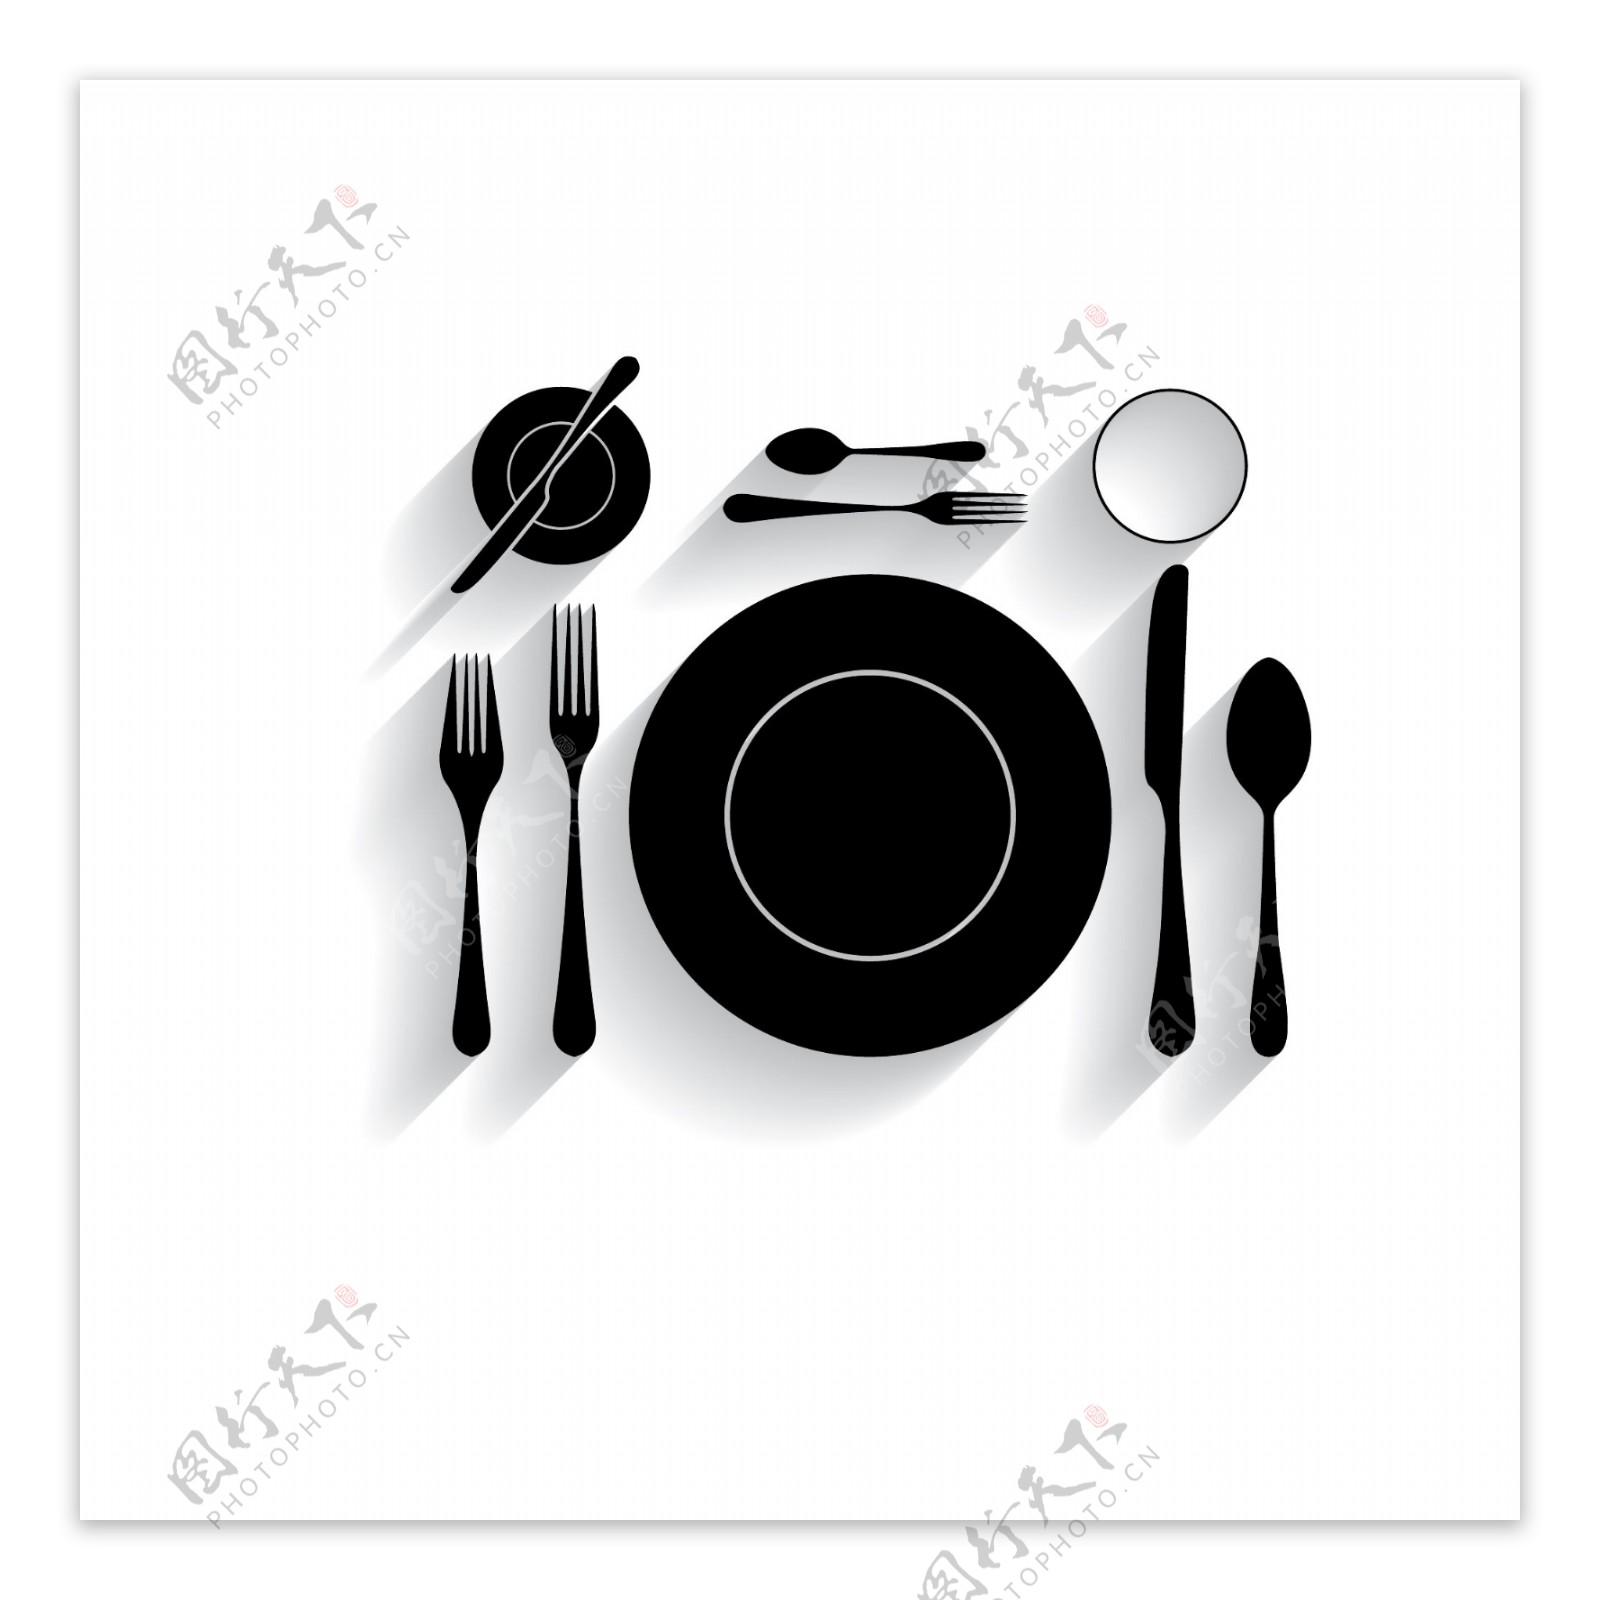 黑色餐具图案矢量素材下载